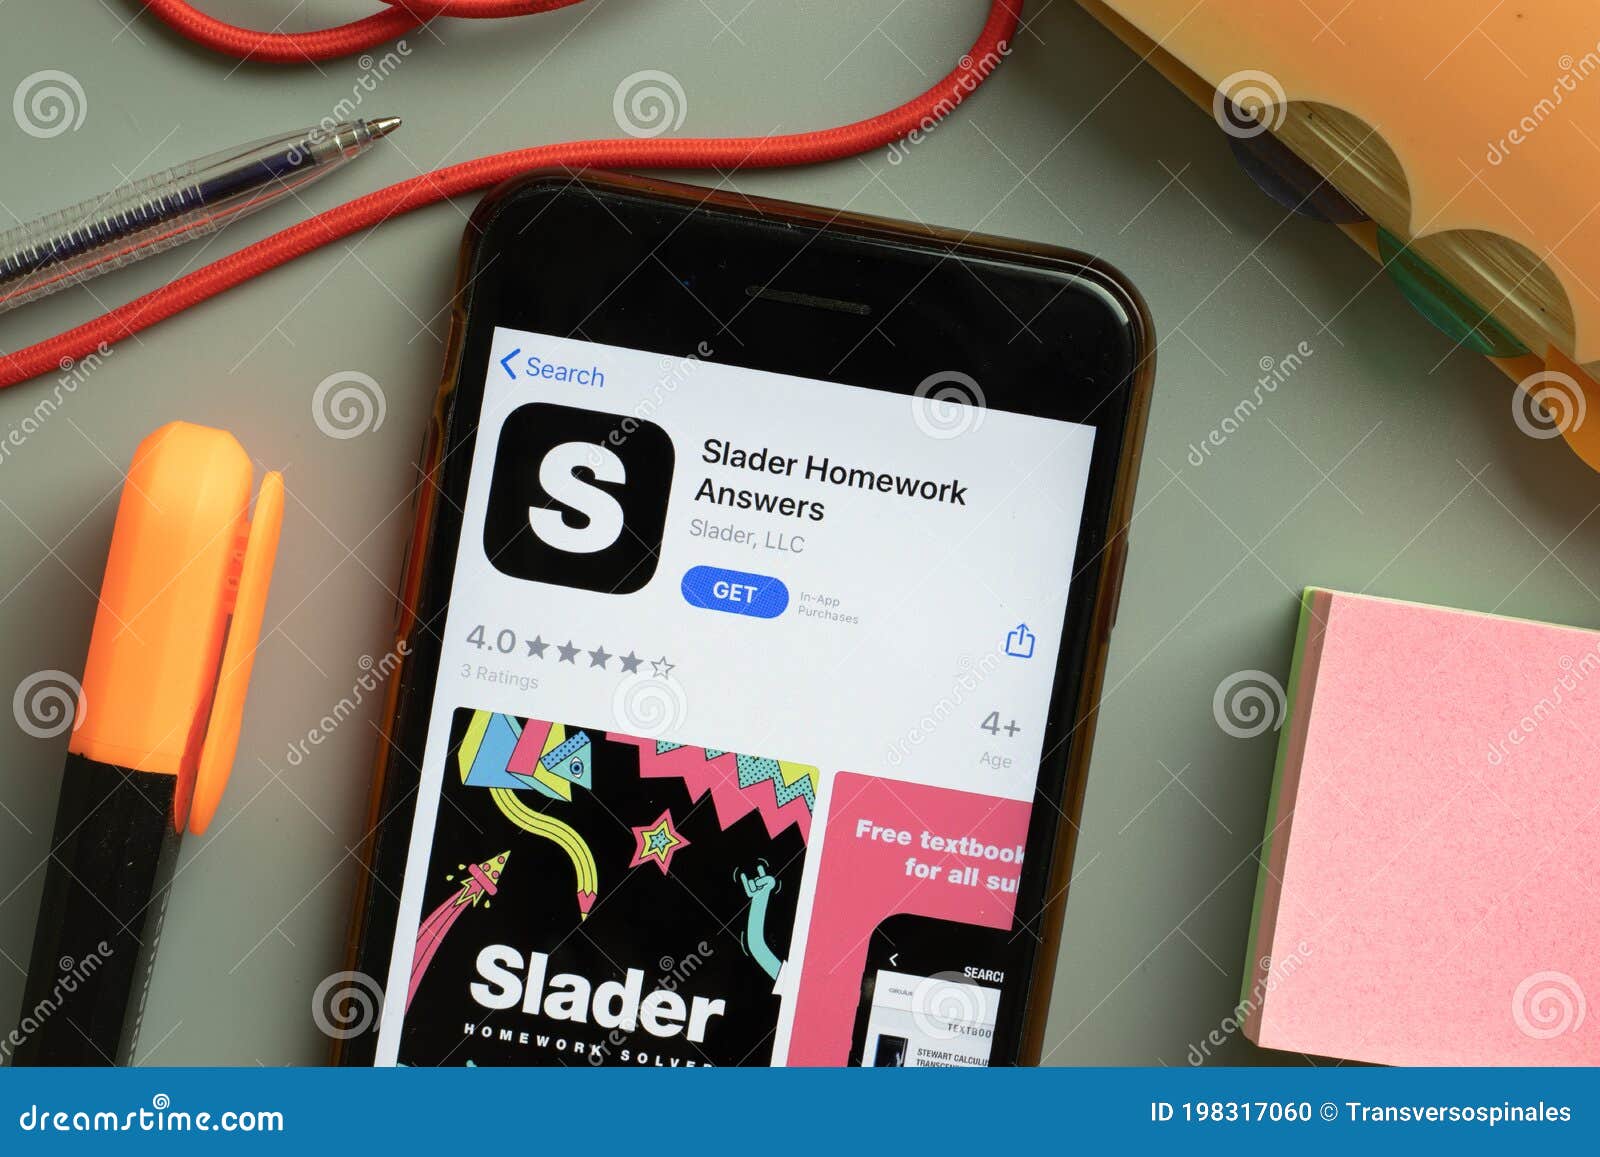 slader homework answers app